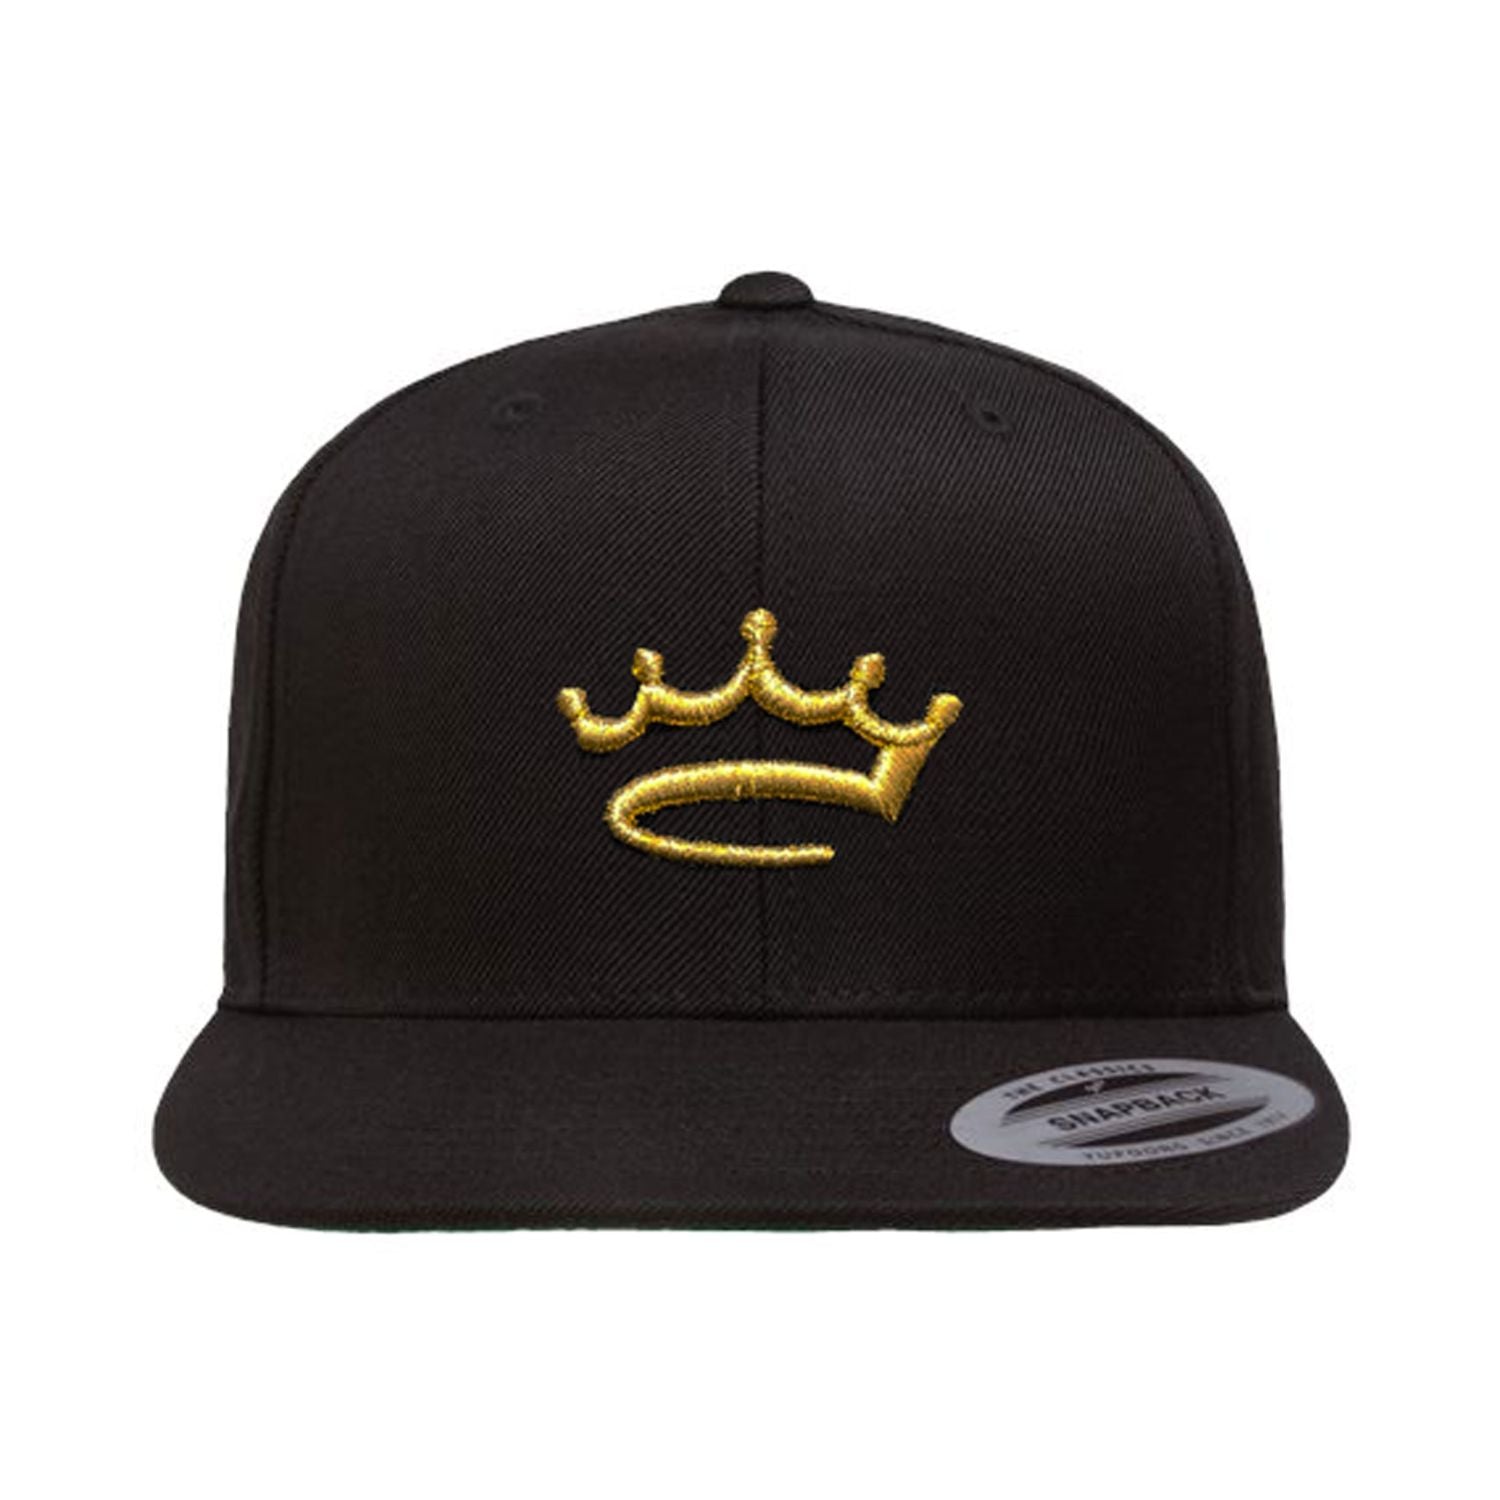 Black / Gold - snapback - hat - Crowned Brand ™